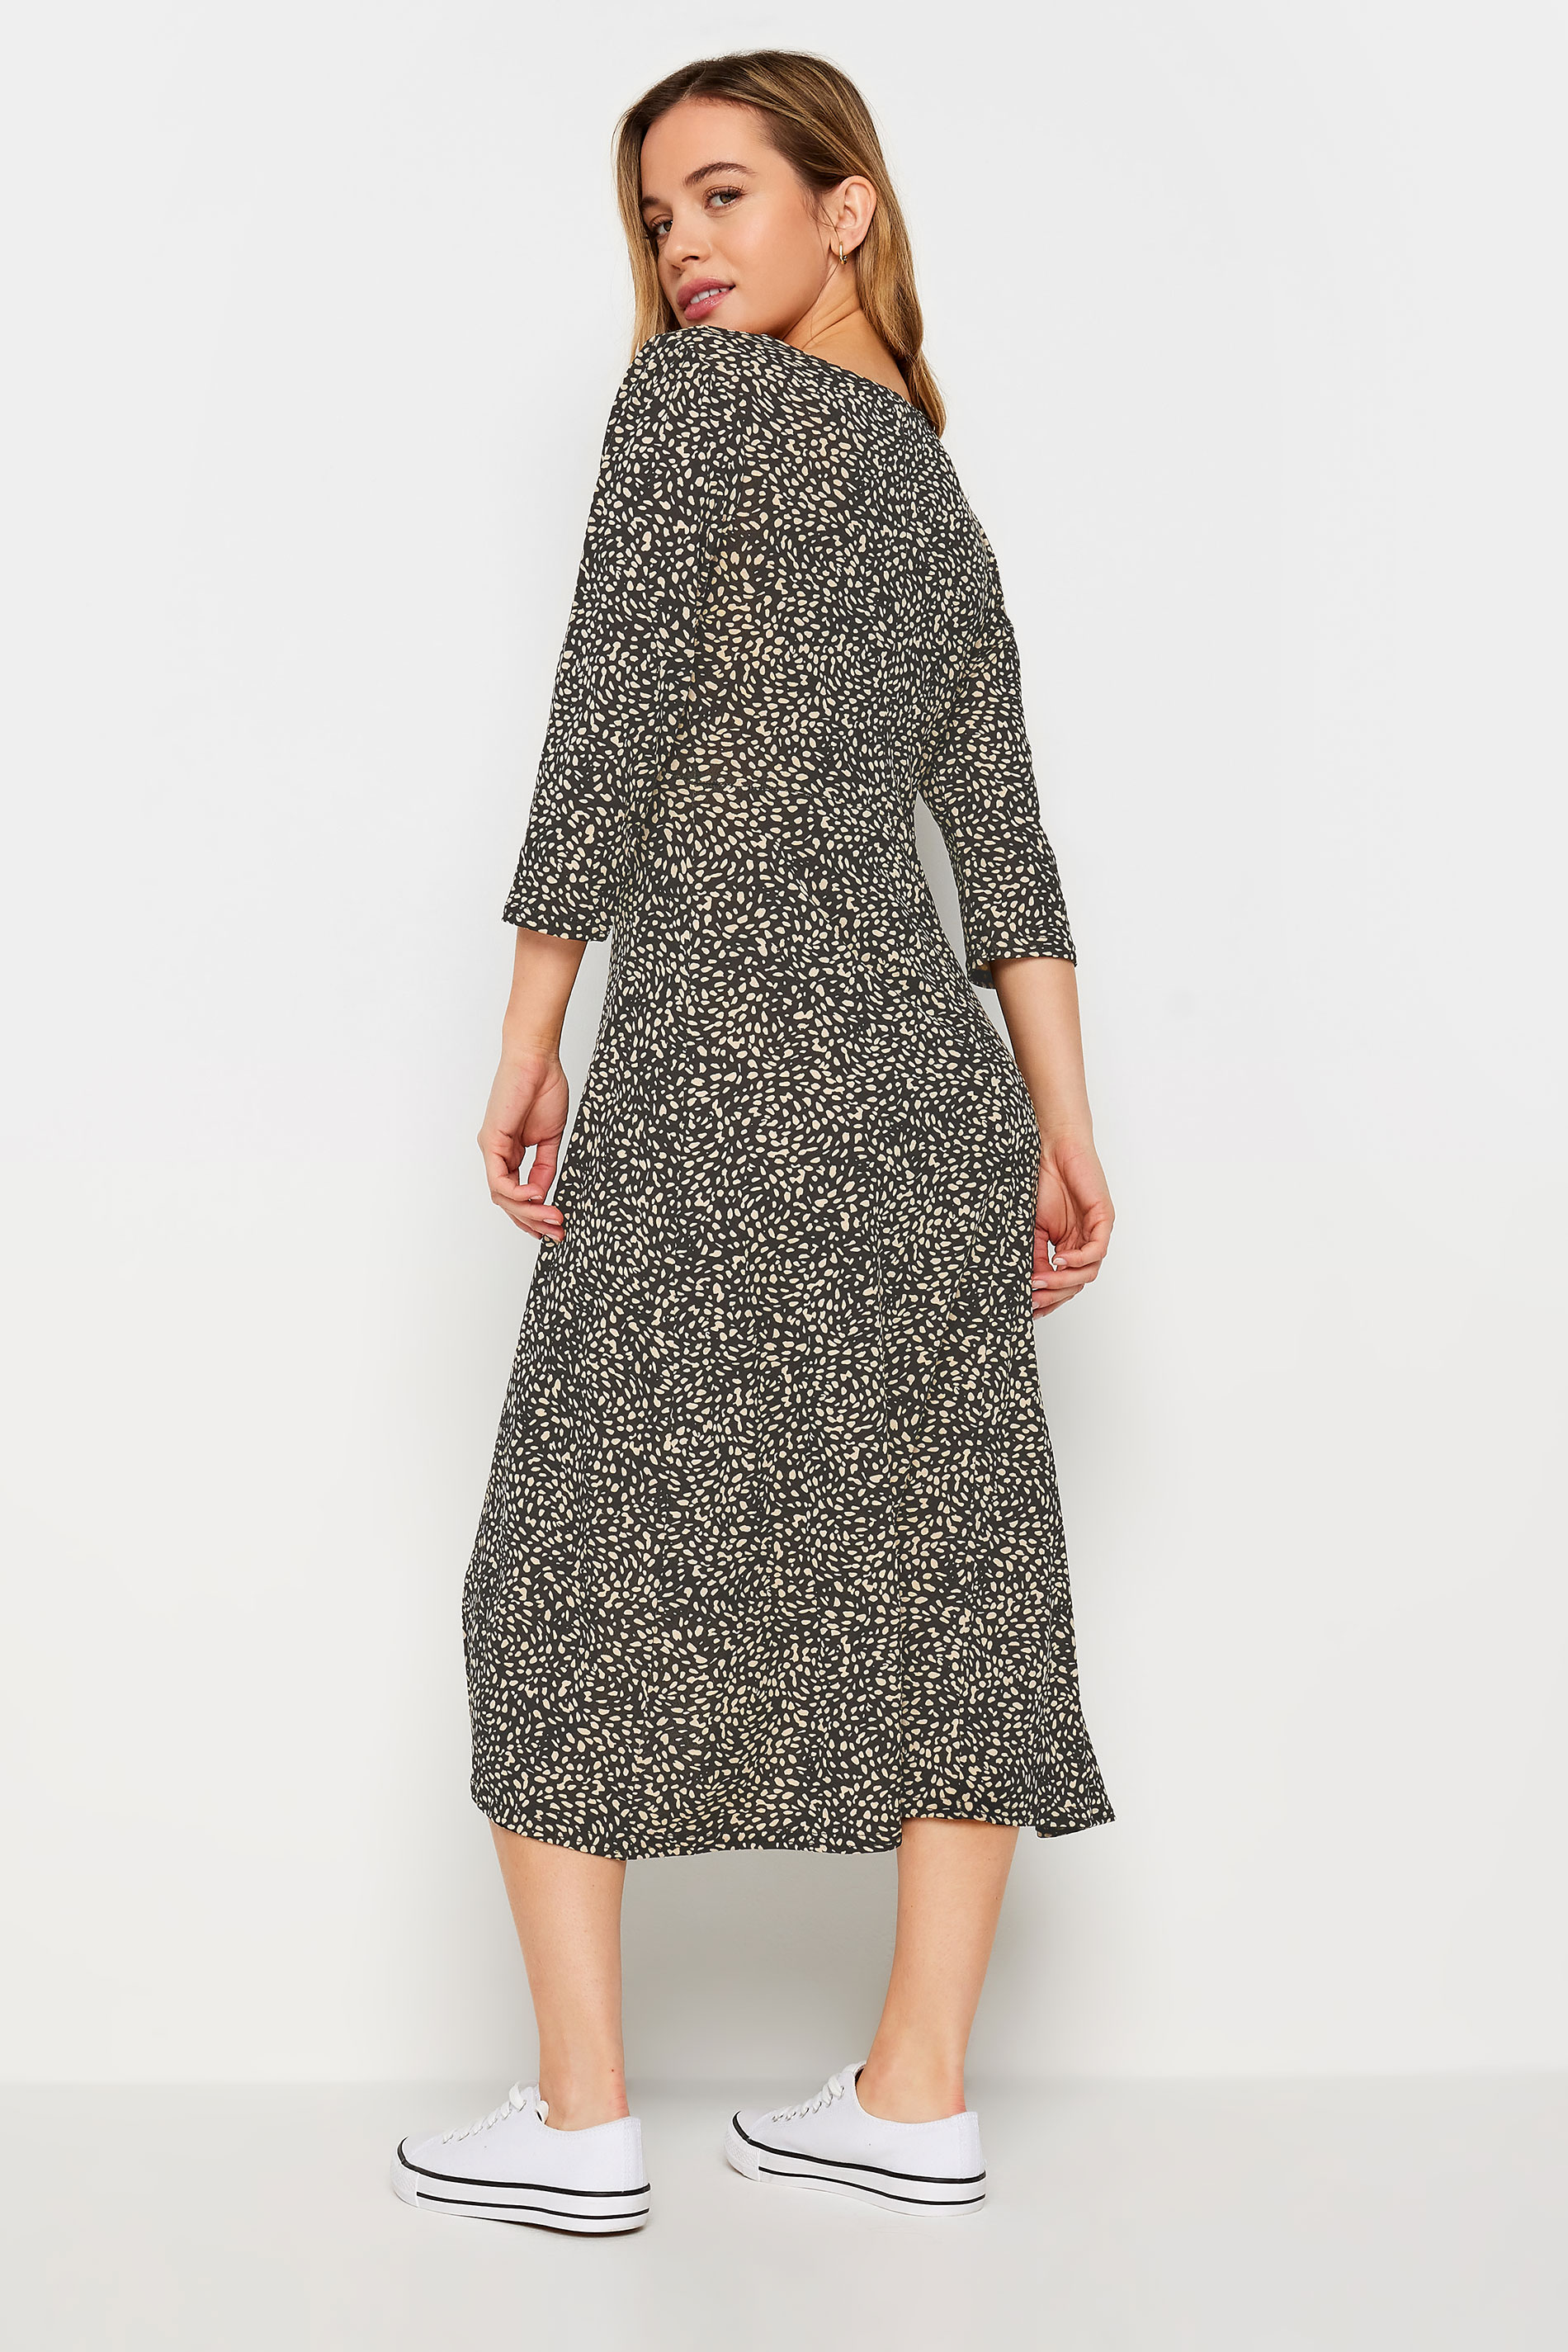 M&Co Petite Black Spot Print Midi Dress | M&Co 3